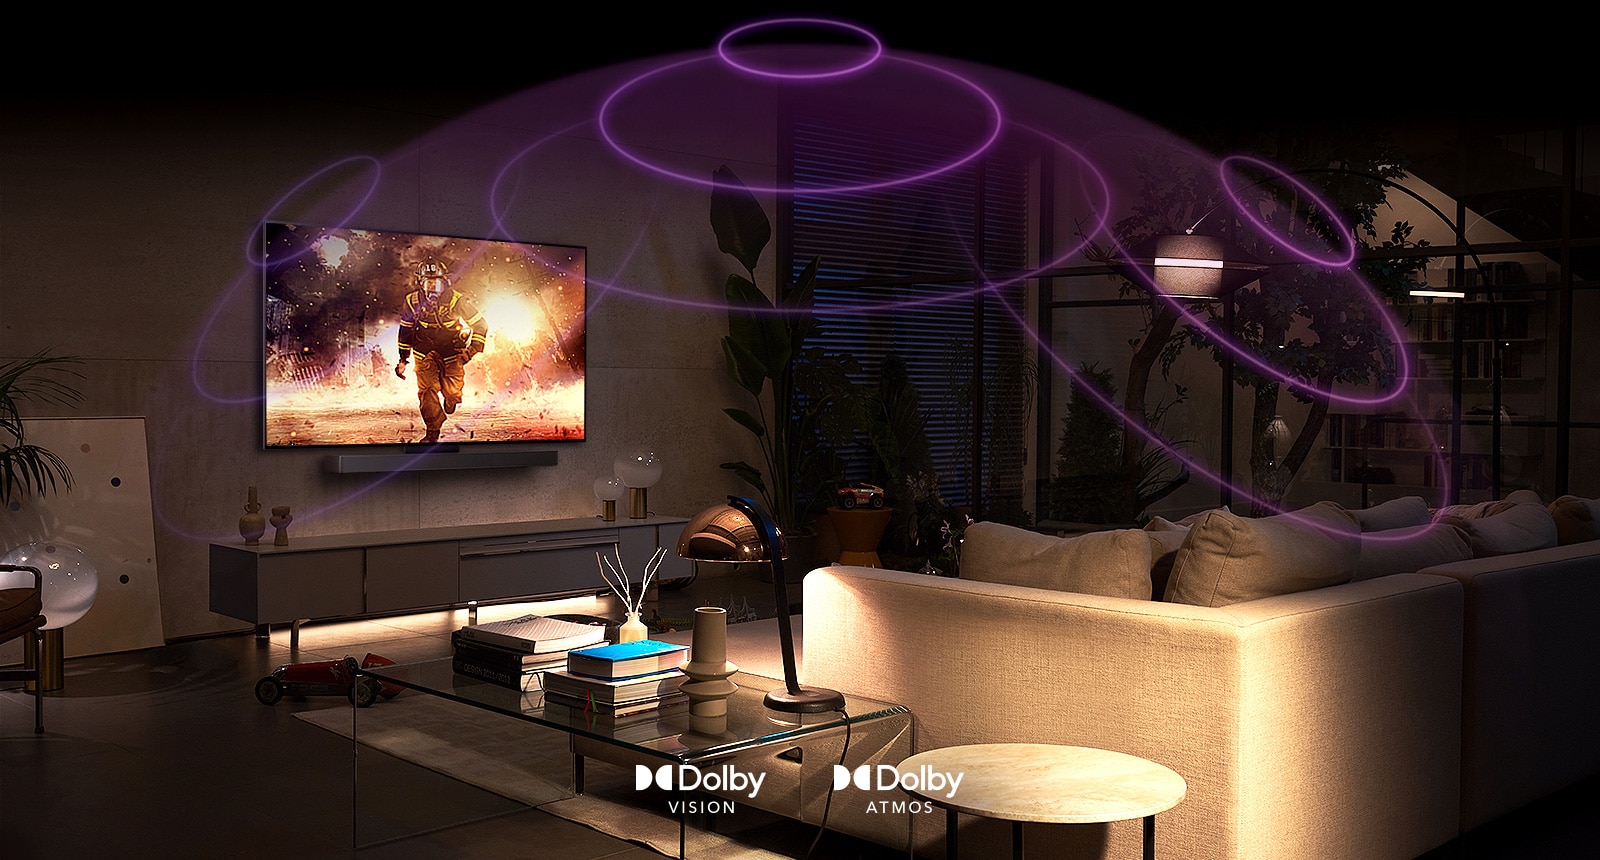 Η εικόνα μιας τηλεόρασης LG OLED σε ένα δωμάτιο όπου προβάλλεται μια ταινία δράσης. Τα ηχητικά κύματα δημιουργούν έναν θόλο μεταξύ του καναπέ και της τηλεόρασης, απεικονίζοντας καθηλωτικό χωρικό ήχο.